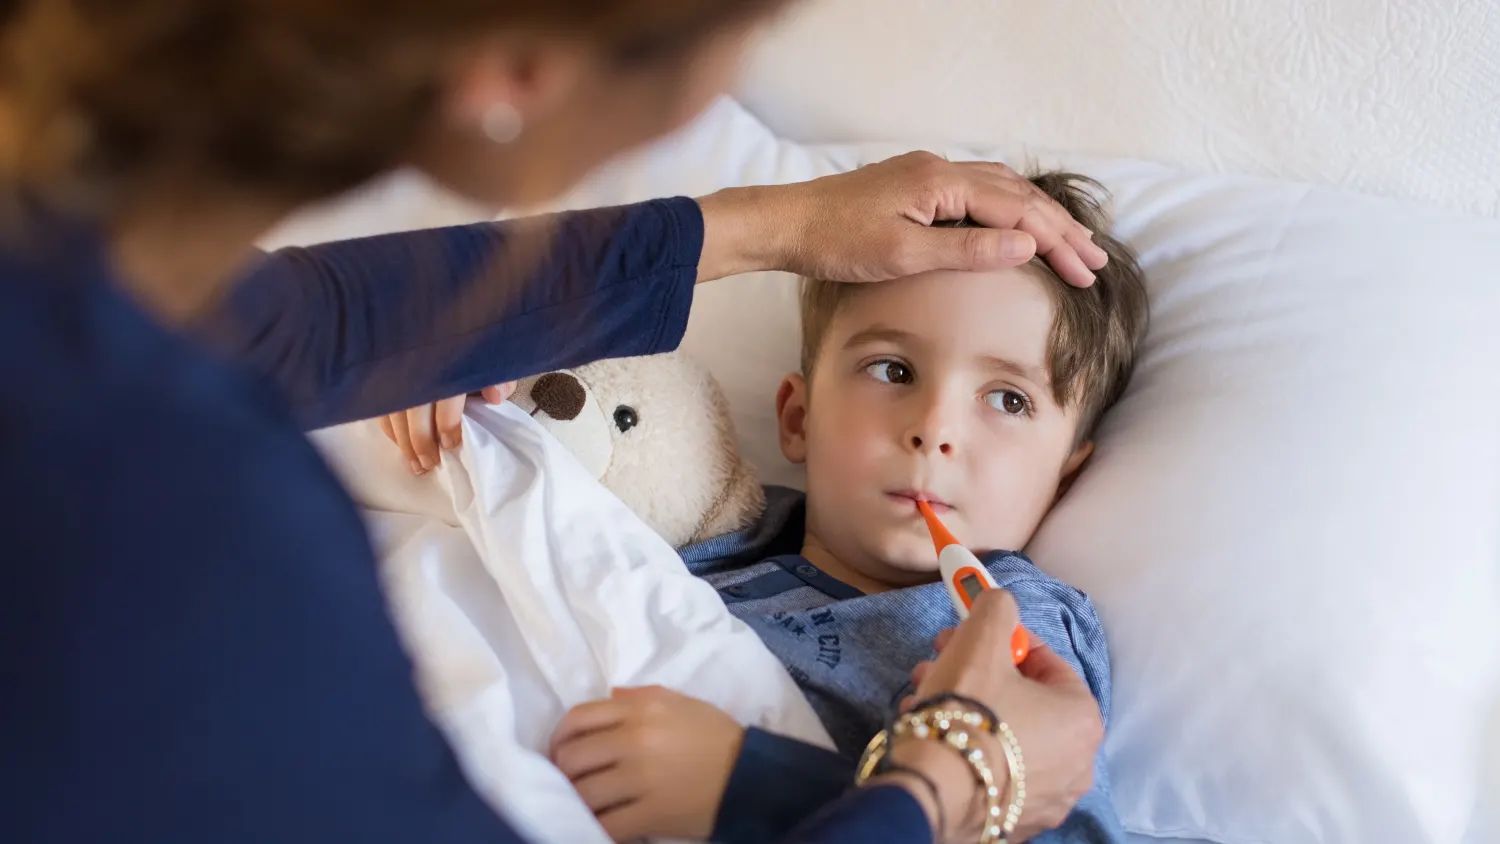 شیوع ویروس خطرناک در کودکان و نوزادان / RSV چیست و چه علائمی دارد؟